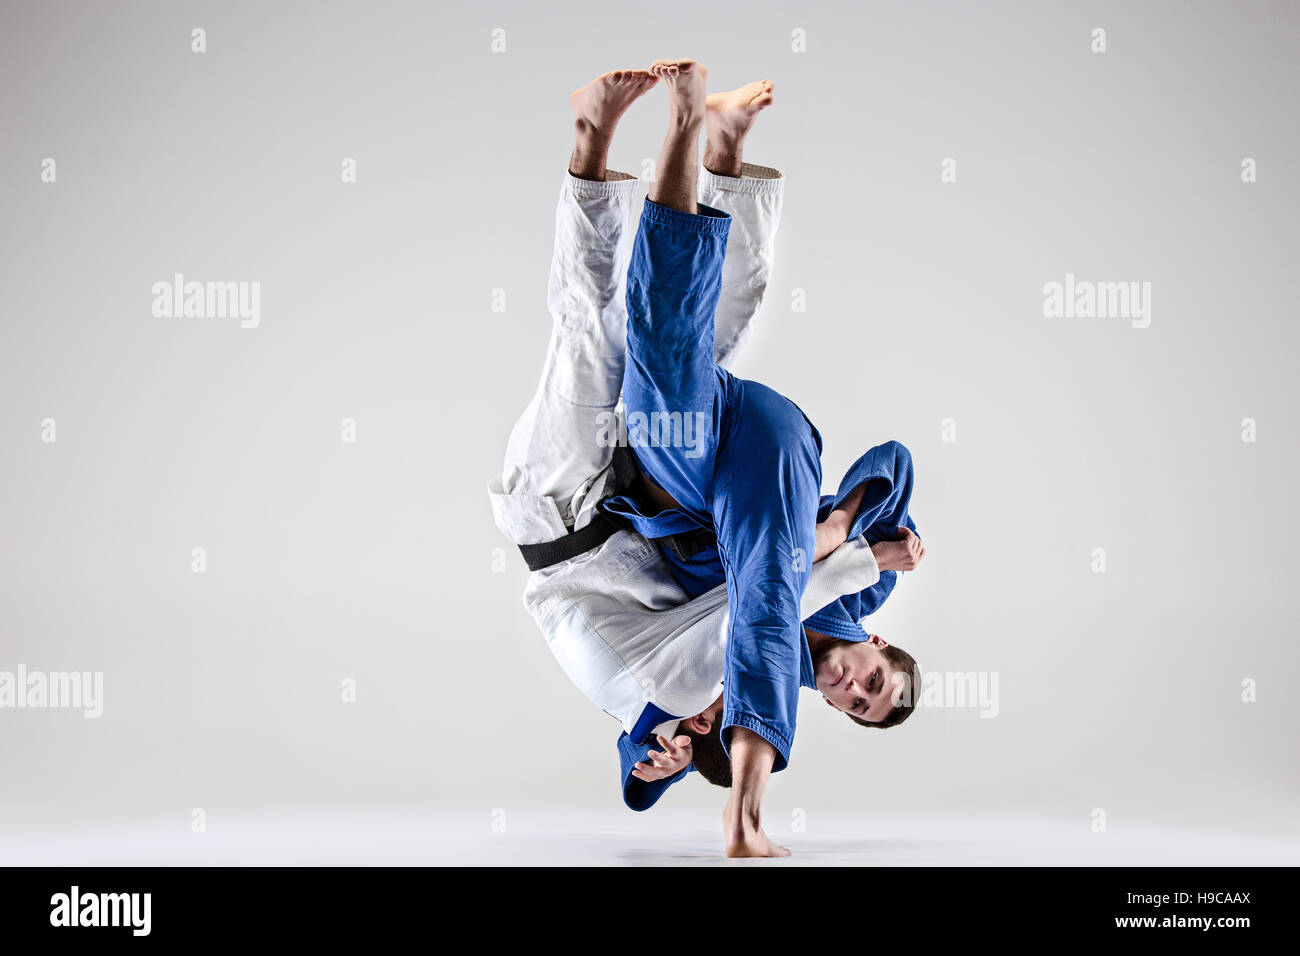 Les deux combattants judokas combattants Banque D'Images